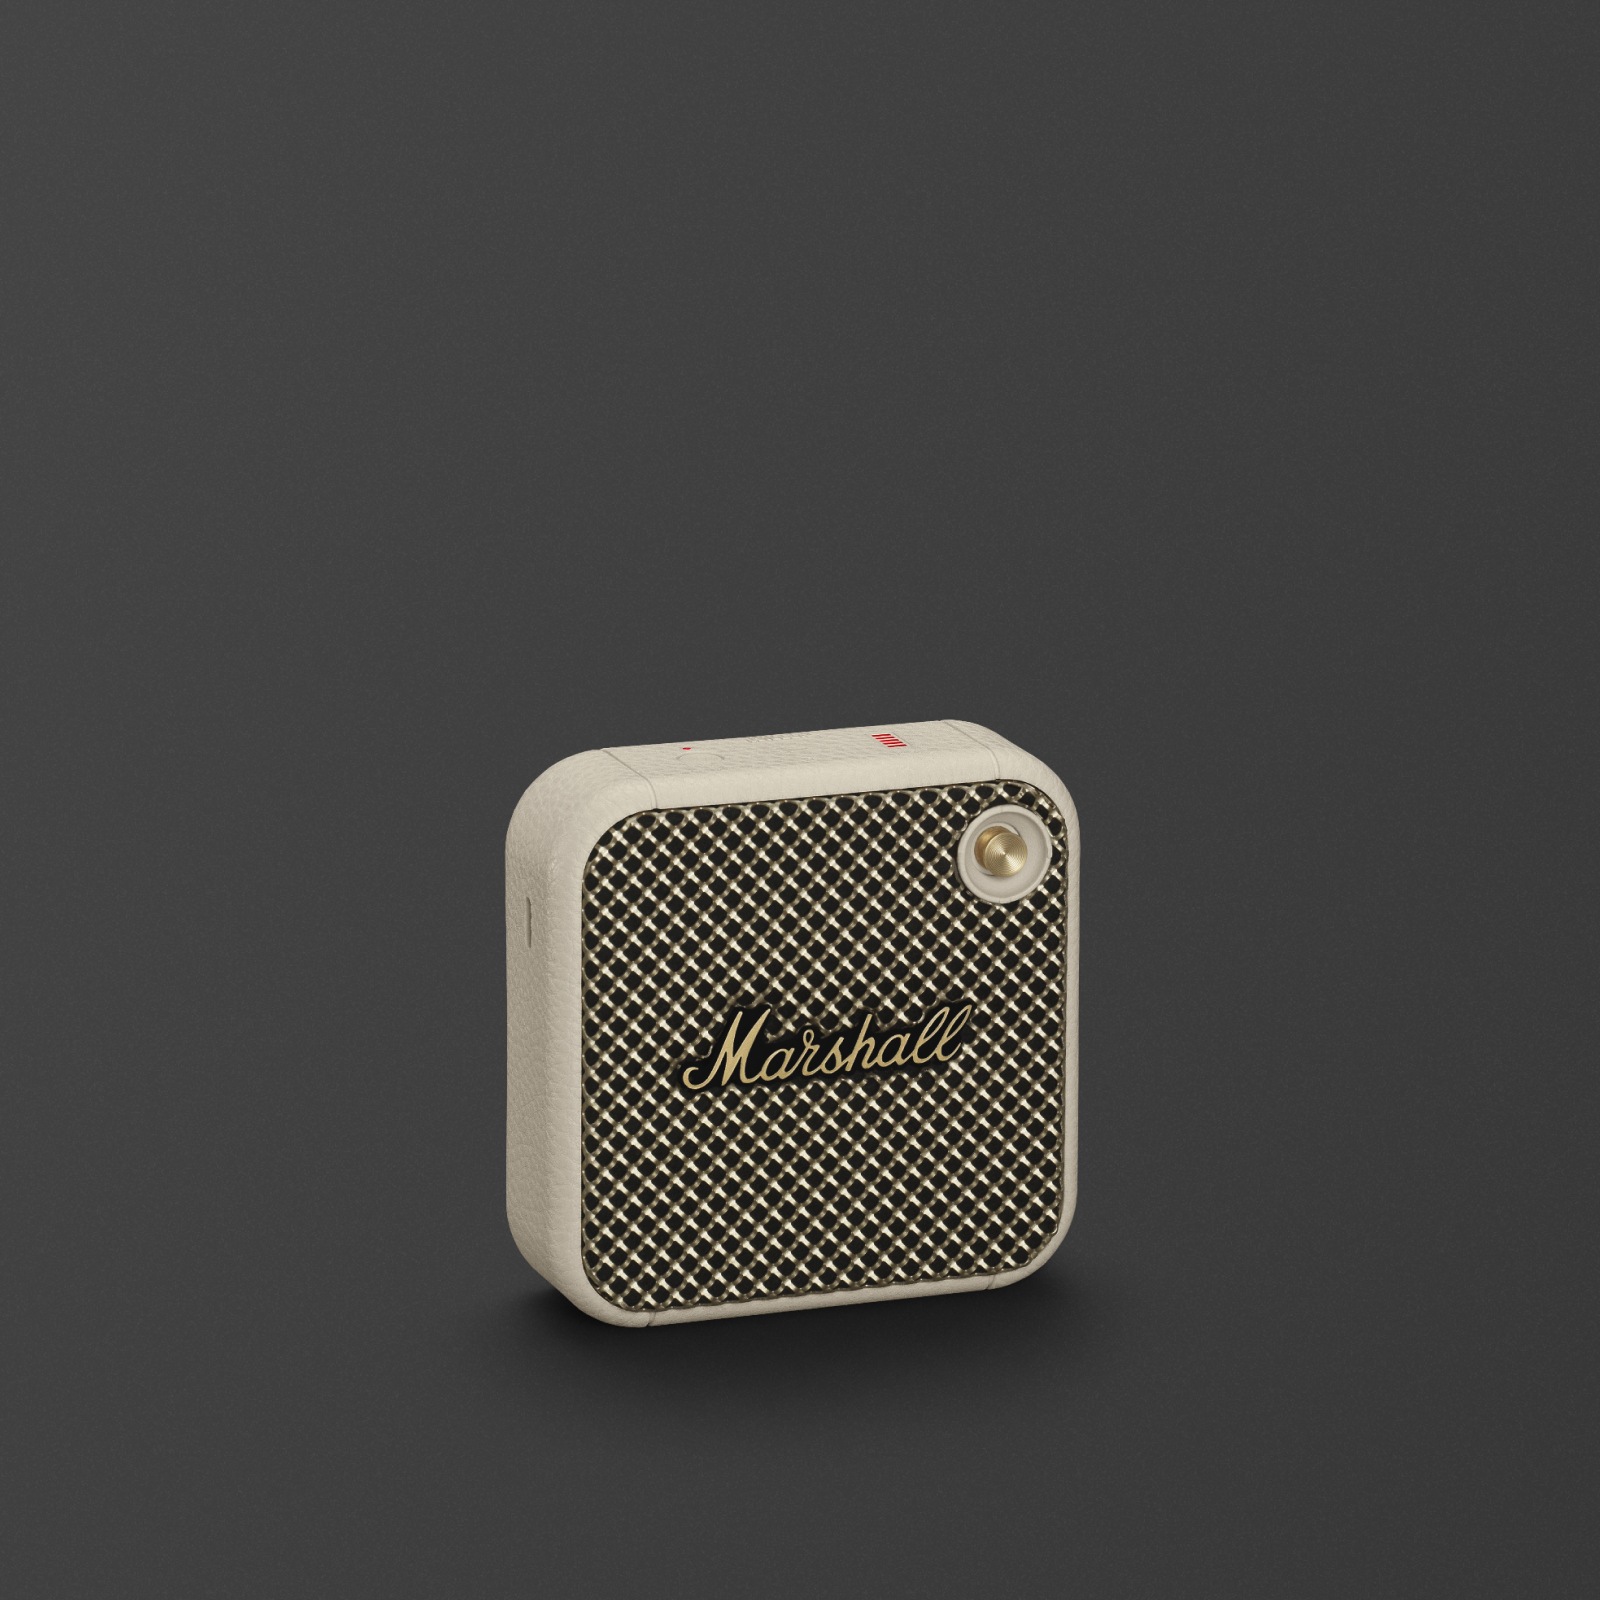 Der Marshall Willen Cream ist ein eleganter kabelloser Lautsprecher in Schwarz-Weiß.